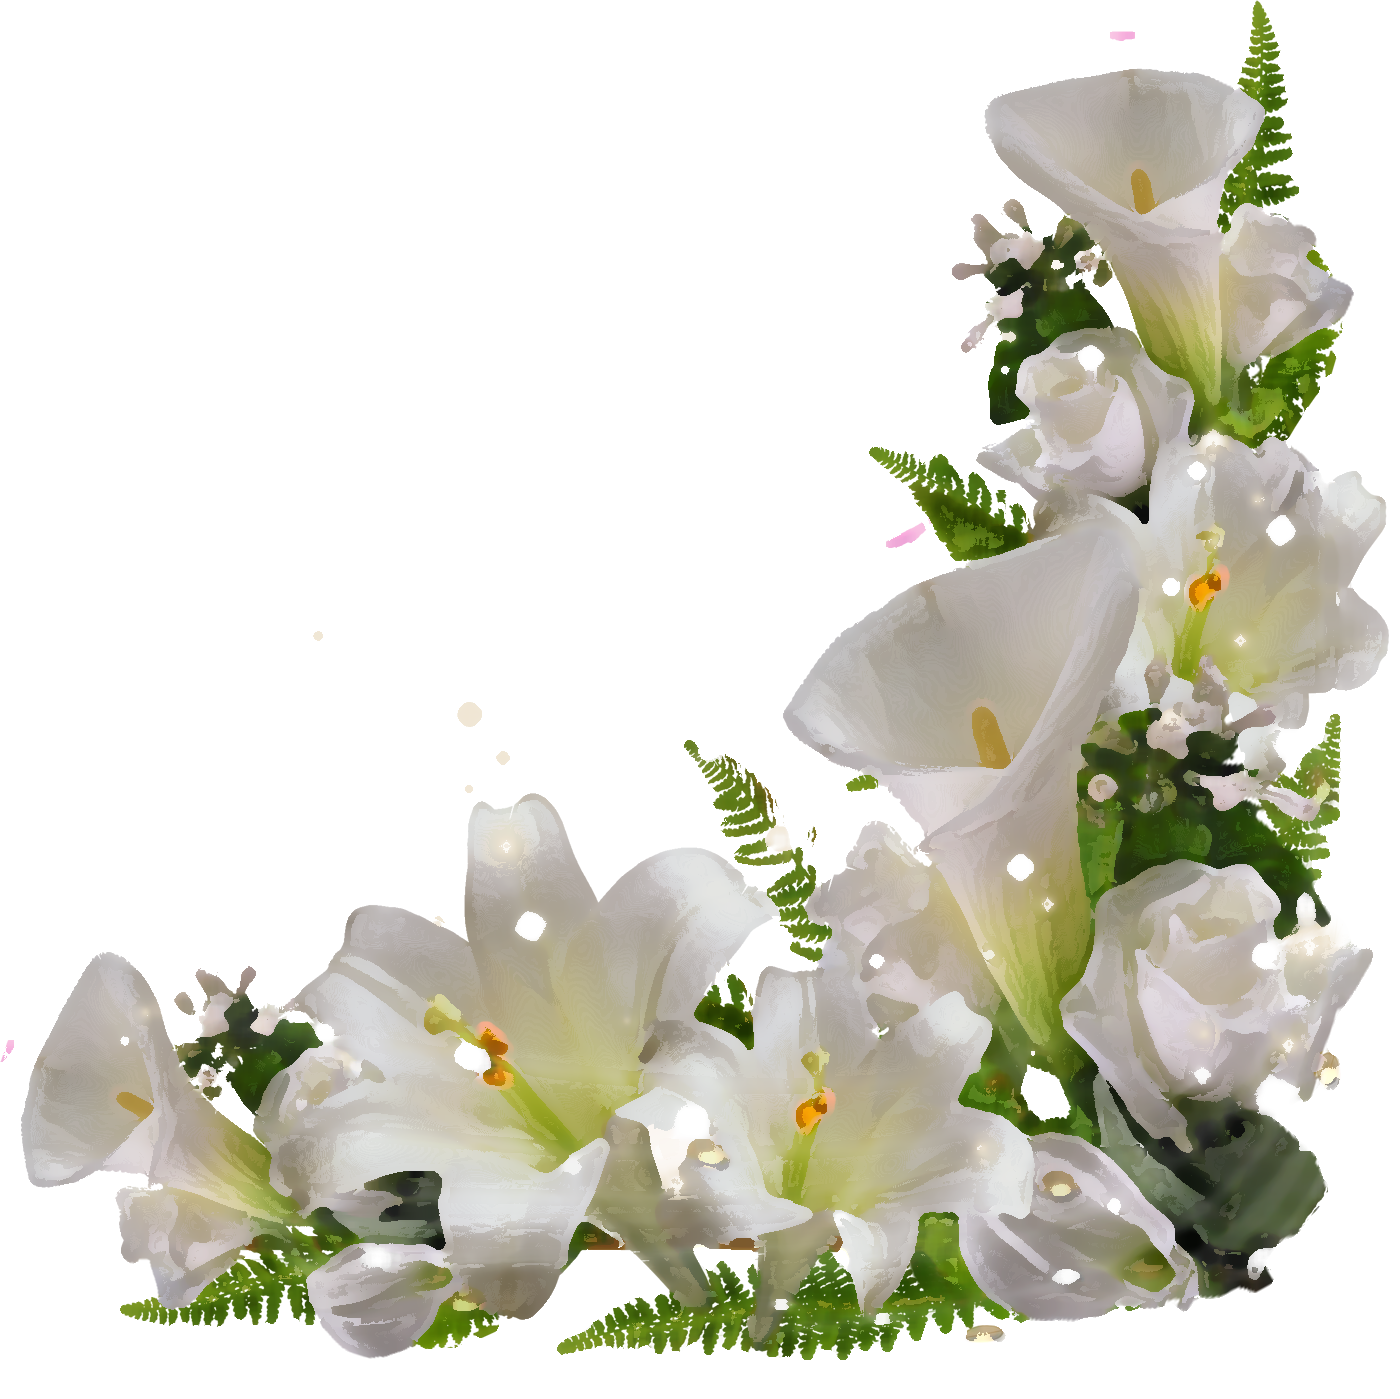 百合 ゆり の花の画像 イラスト フリー素材 No 156 白ユリ 葉 光源